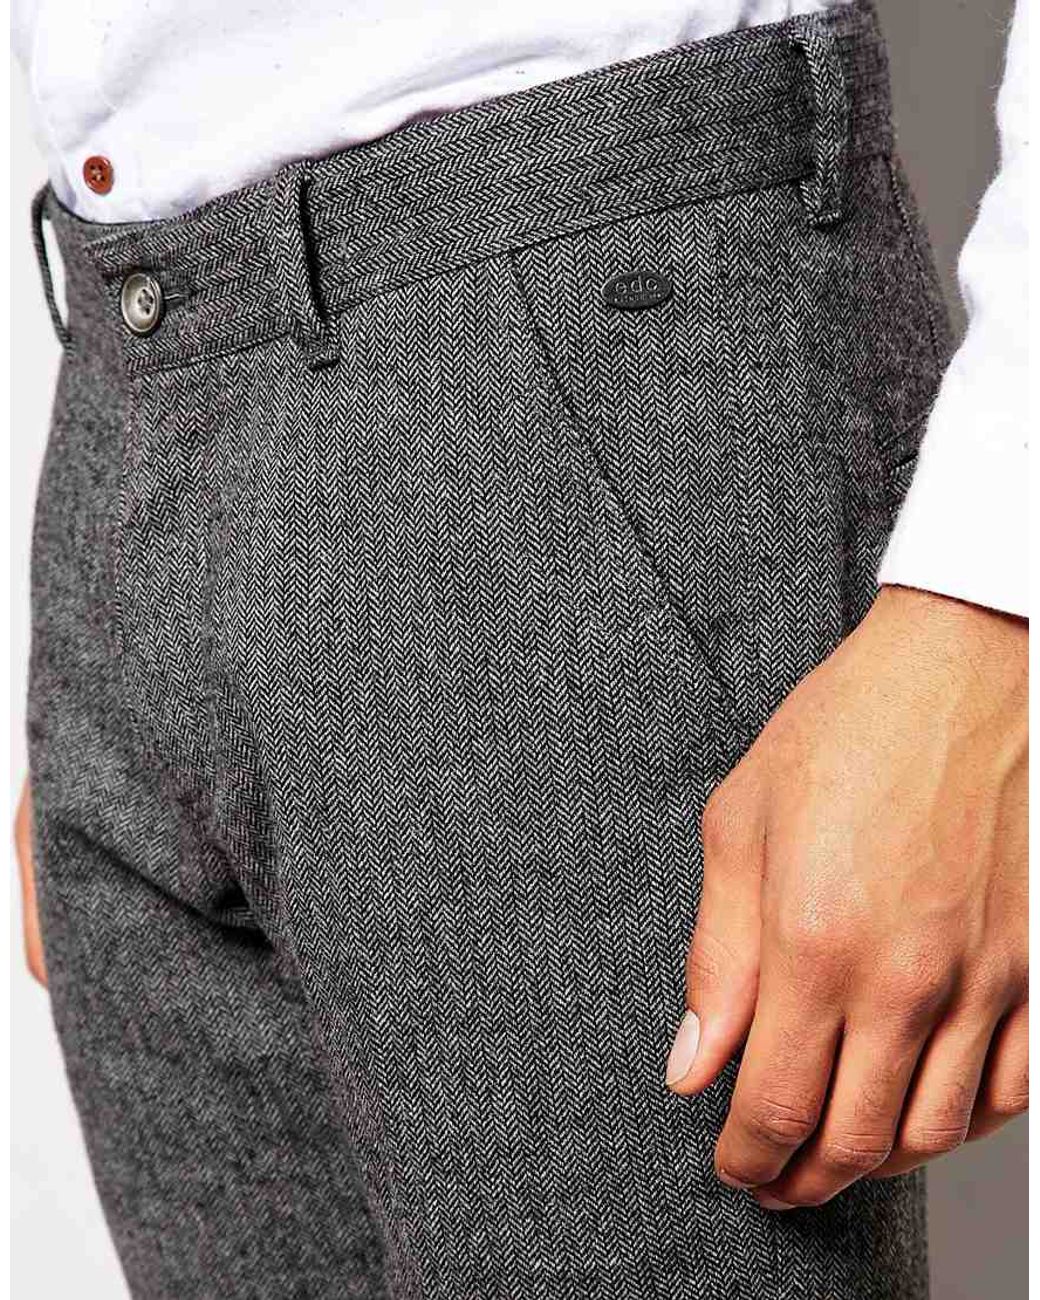 ESPRIT DE CORP Cargo pants Mens size 33 | eBay